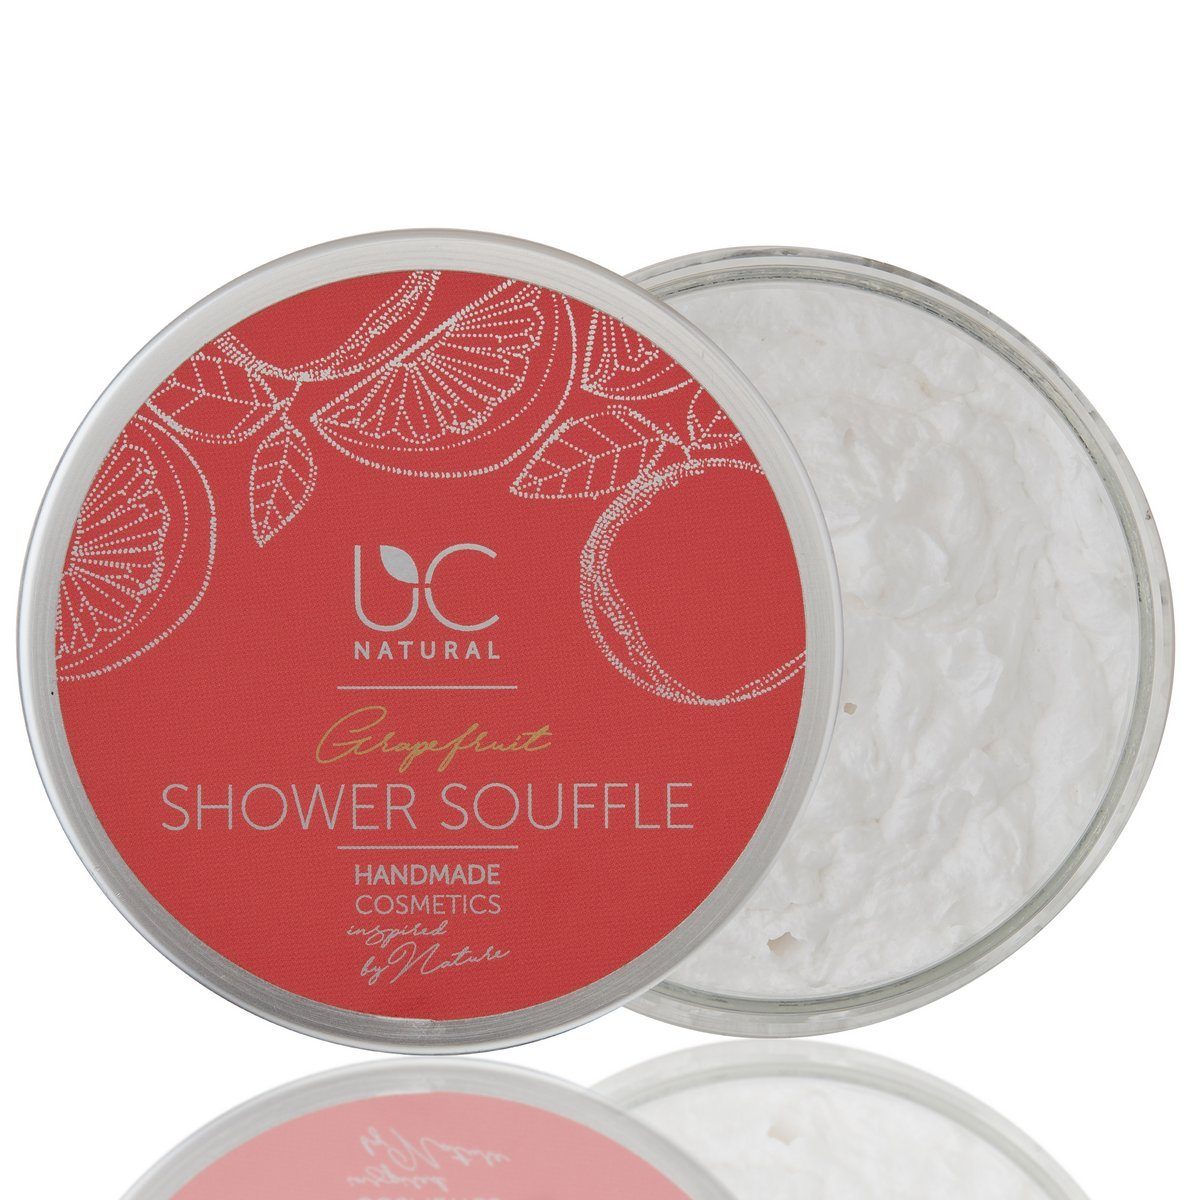 UC Natural Duschpflege UC Natural Shower Souffle, 1-tlg., Grapefruit Shower Soufflé handgemacht 150g vegan | Duschgele